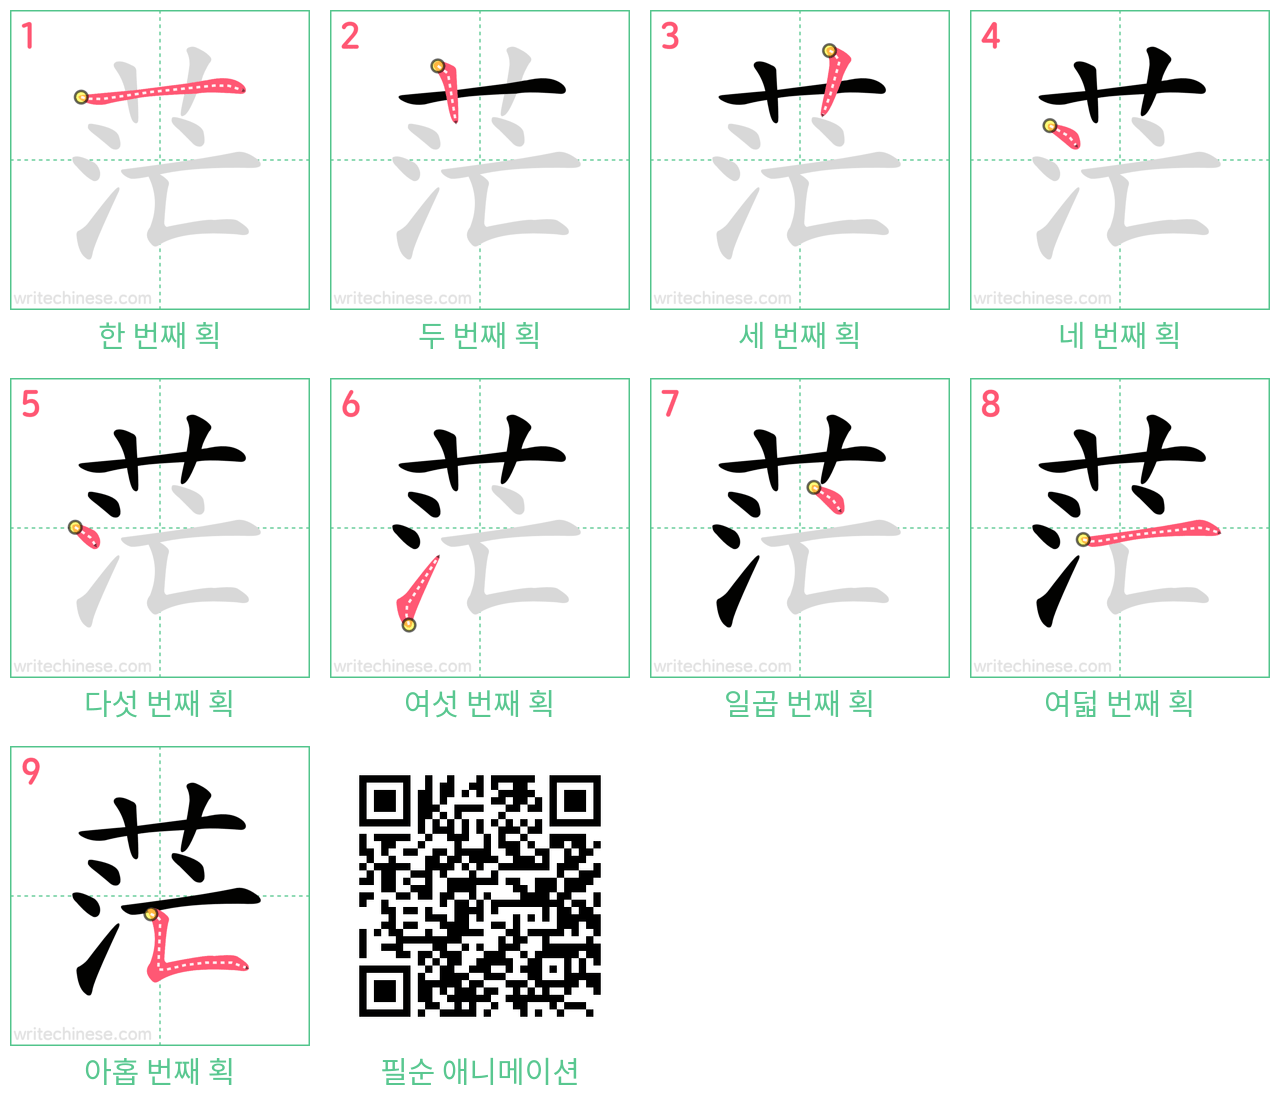 茫 step-by-step stroke order diagrams